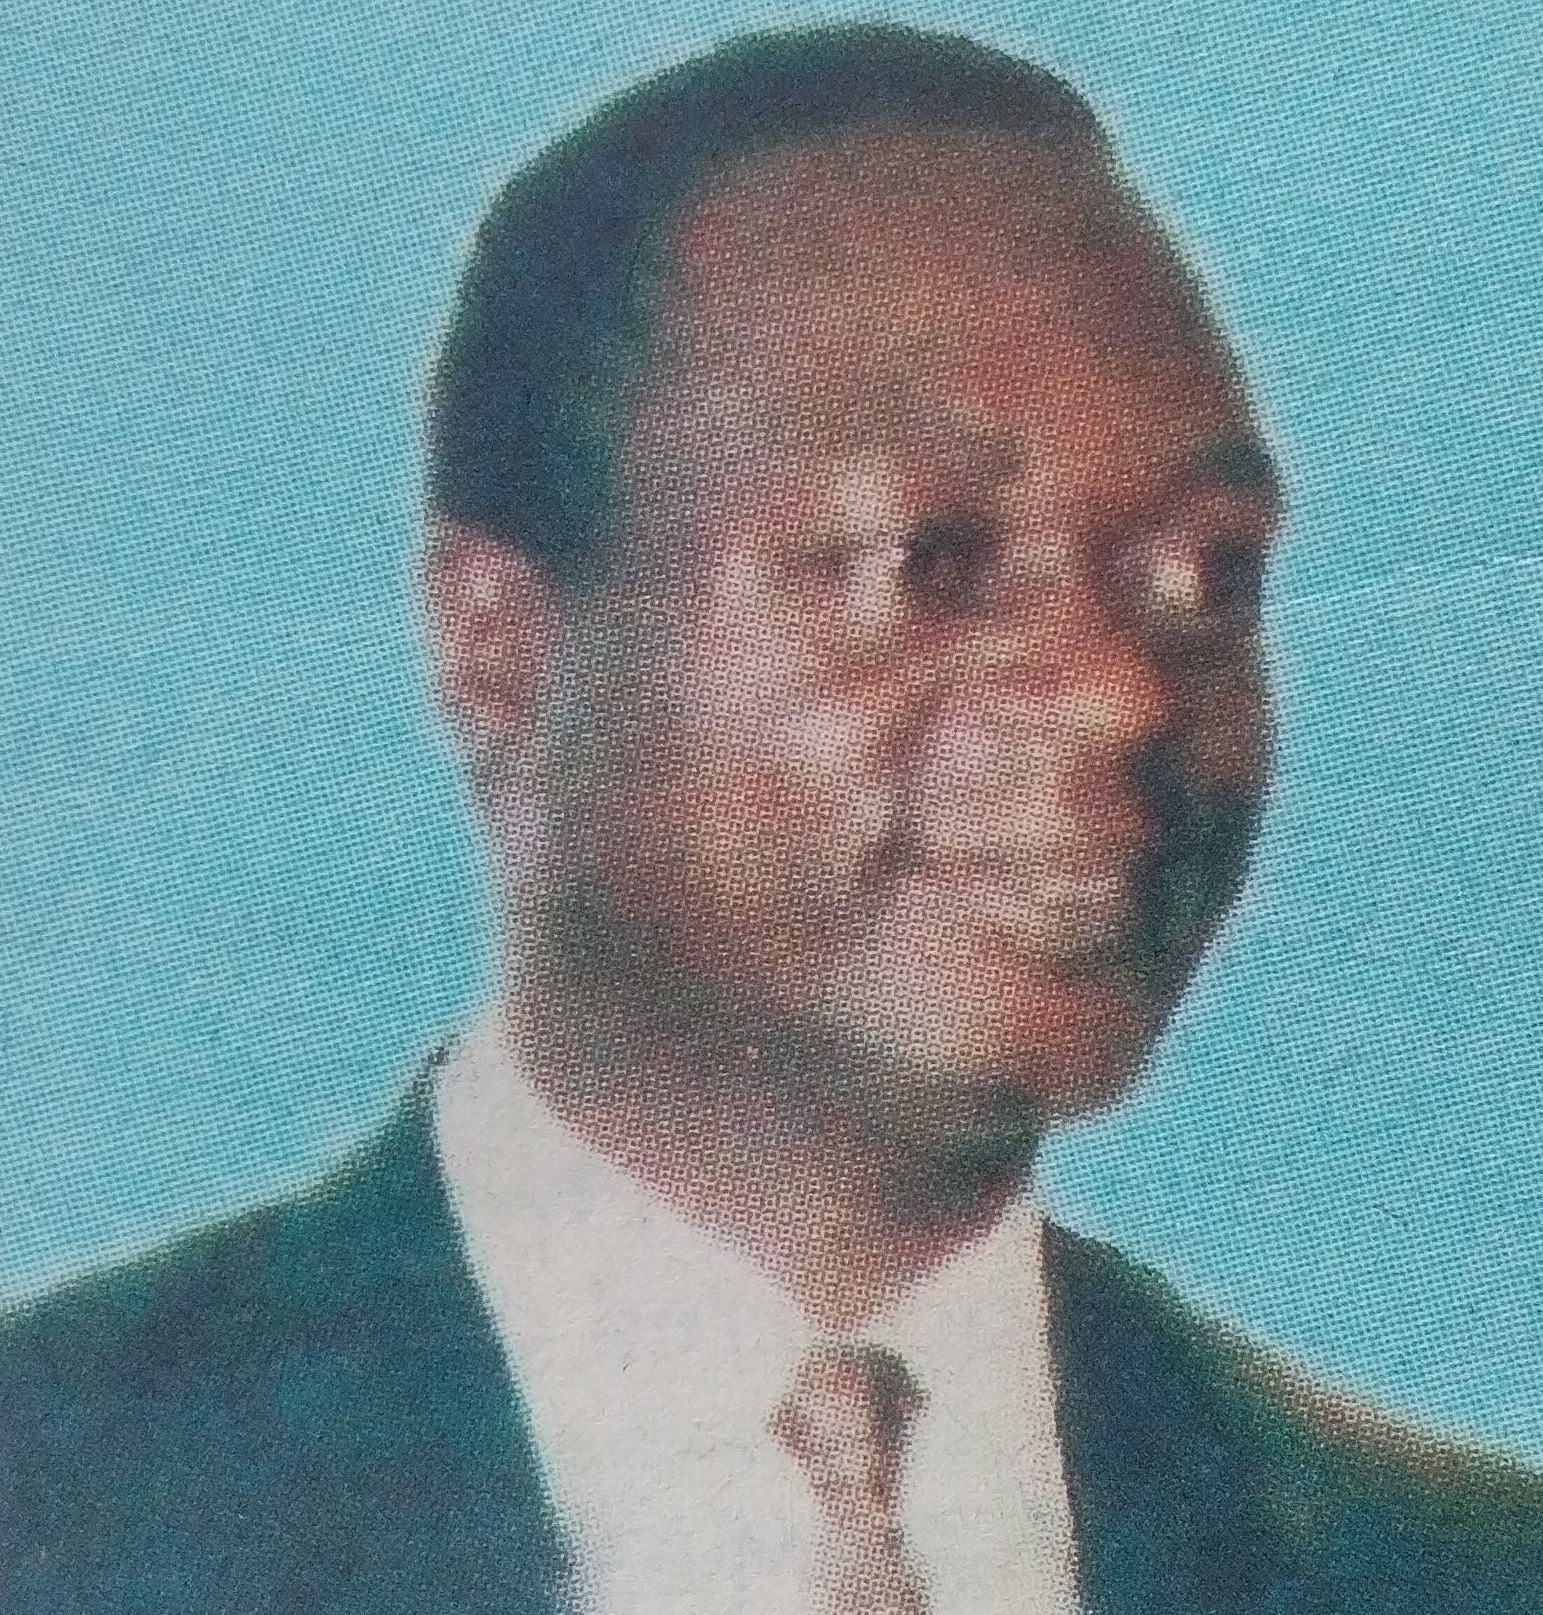 Obituary Image of Shem Shilidza Musungu Musonye